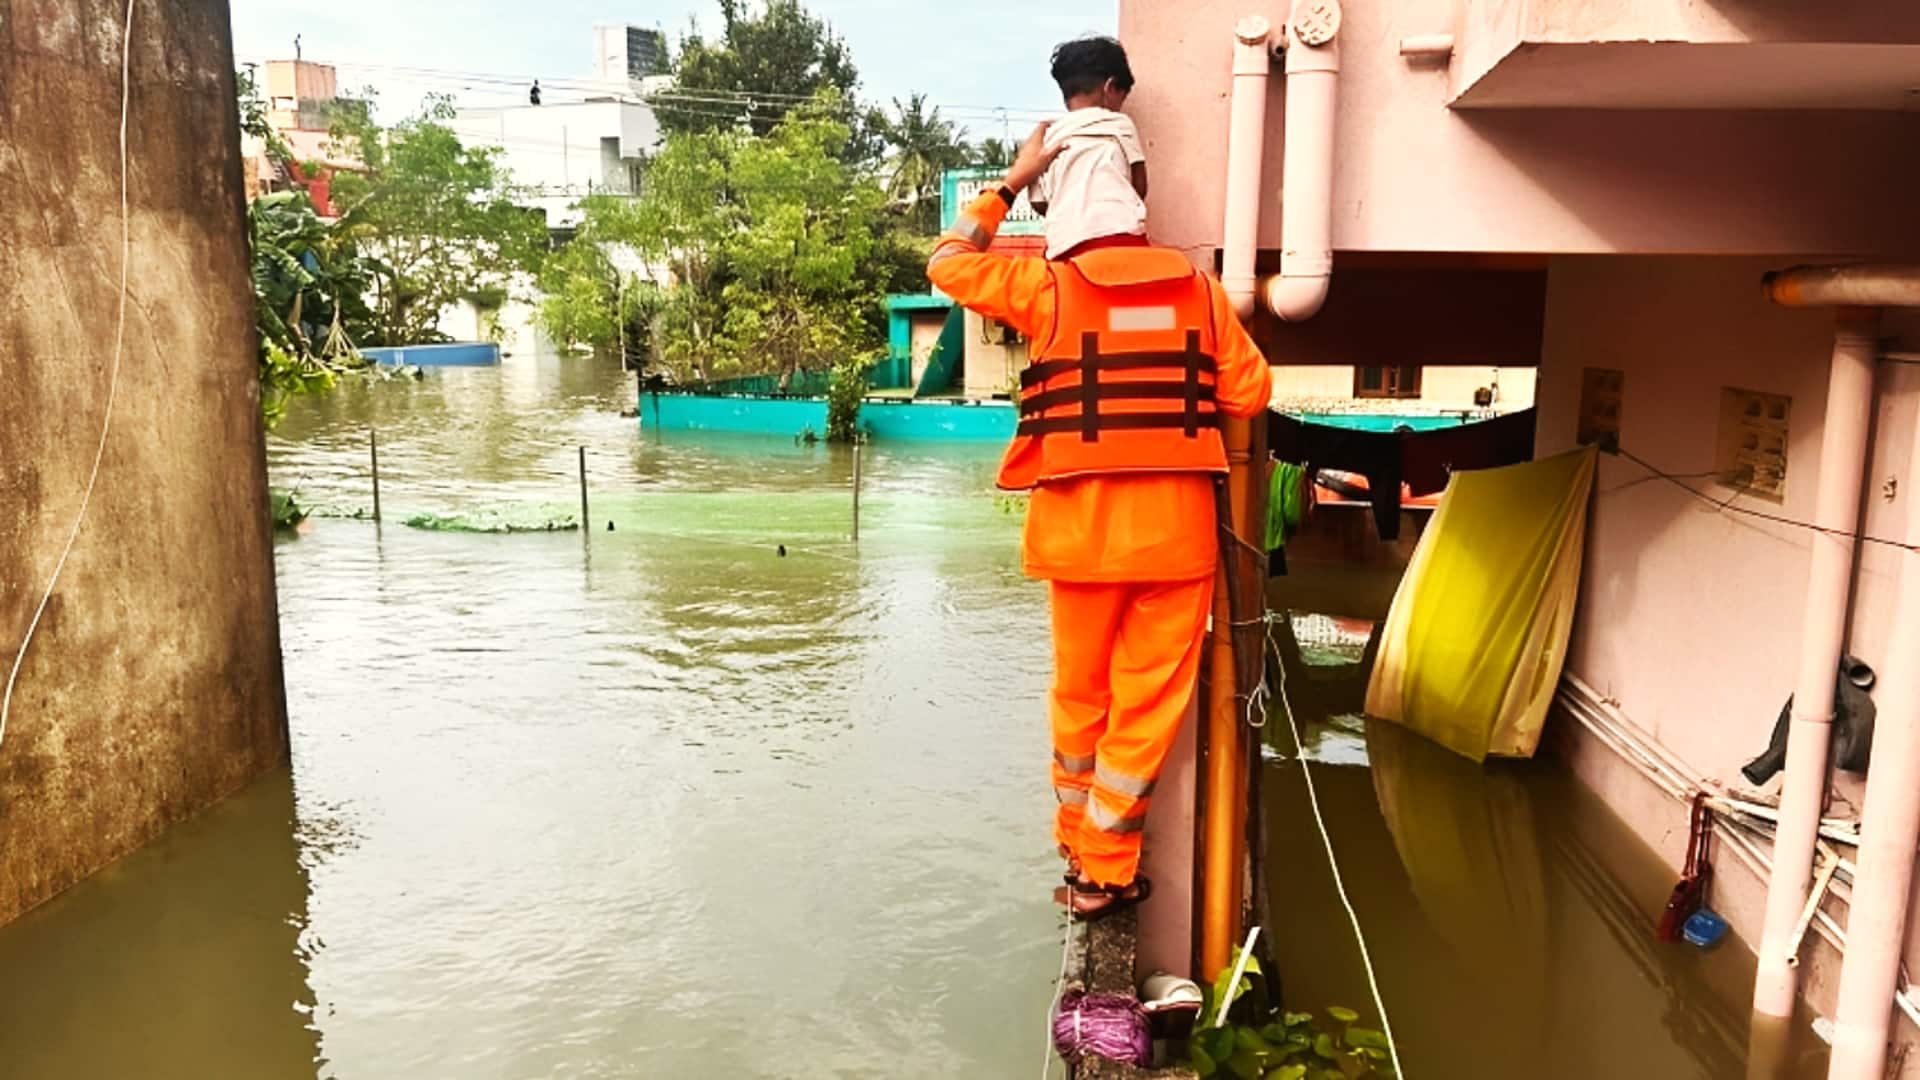 चेन्नई: बाढ़ के पानी से सड़कें अभी तक लबालब, स्कूल-कॉलेजों की शुक्रवार तक छुट्टी